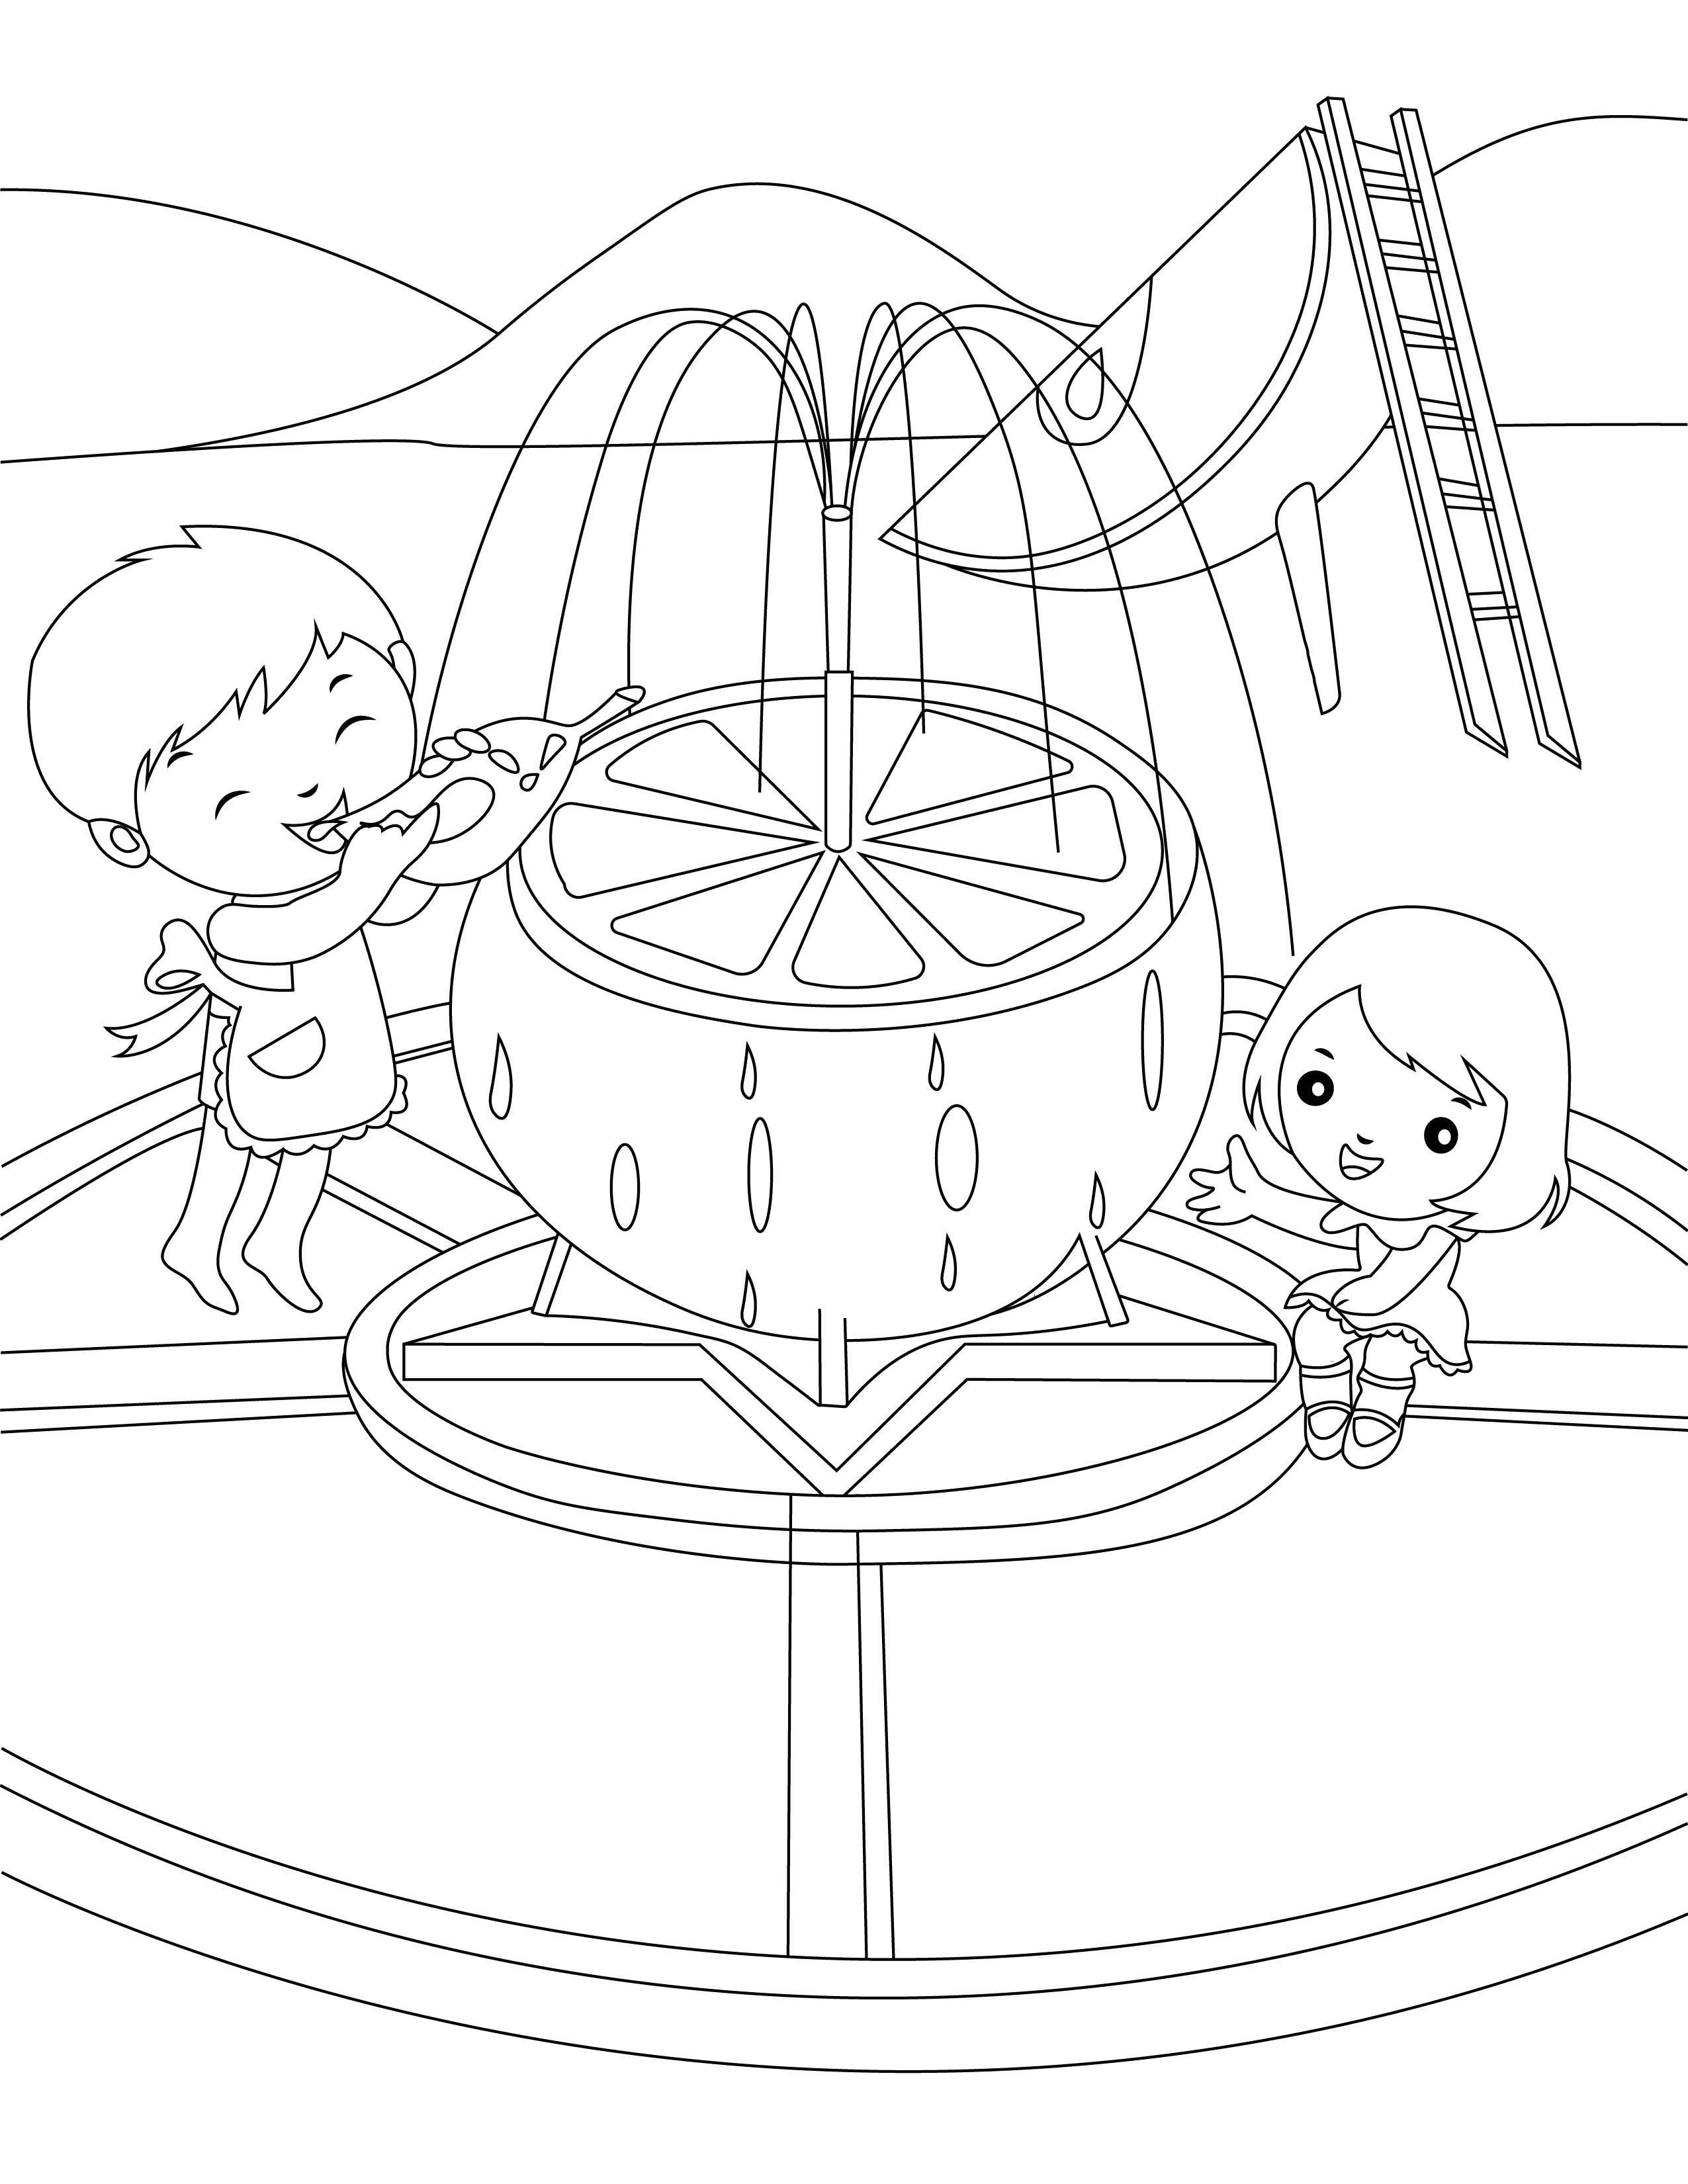 Página para colorear de niños jugando en la fuente del patio de recreo